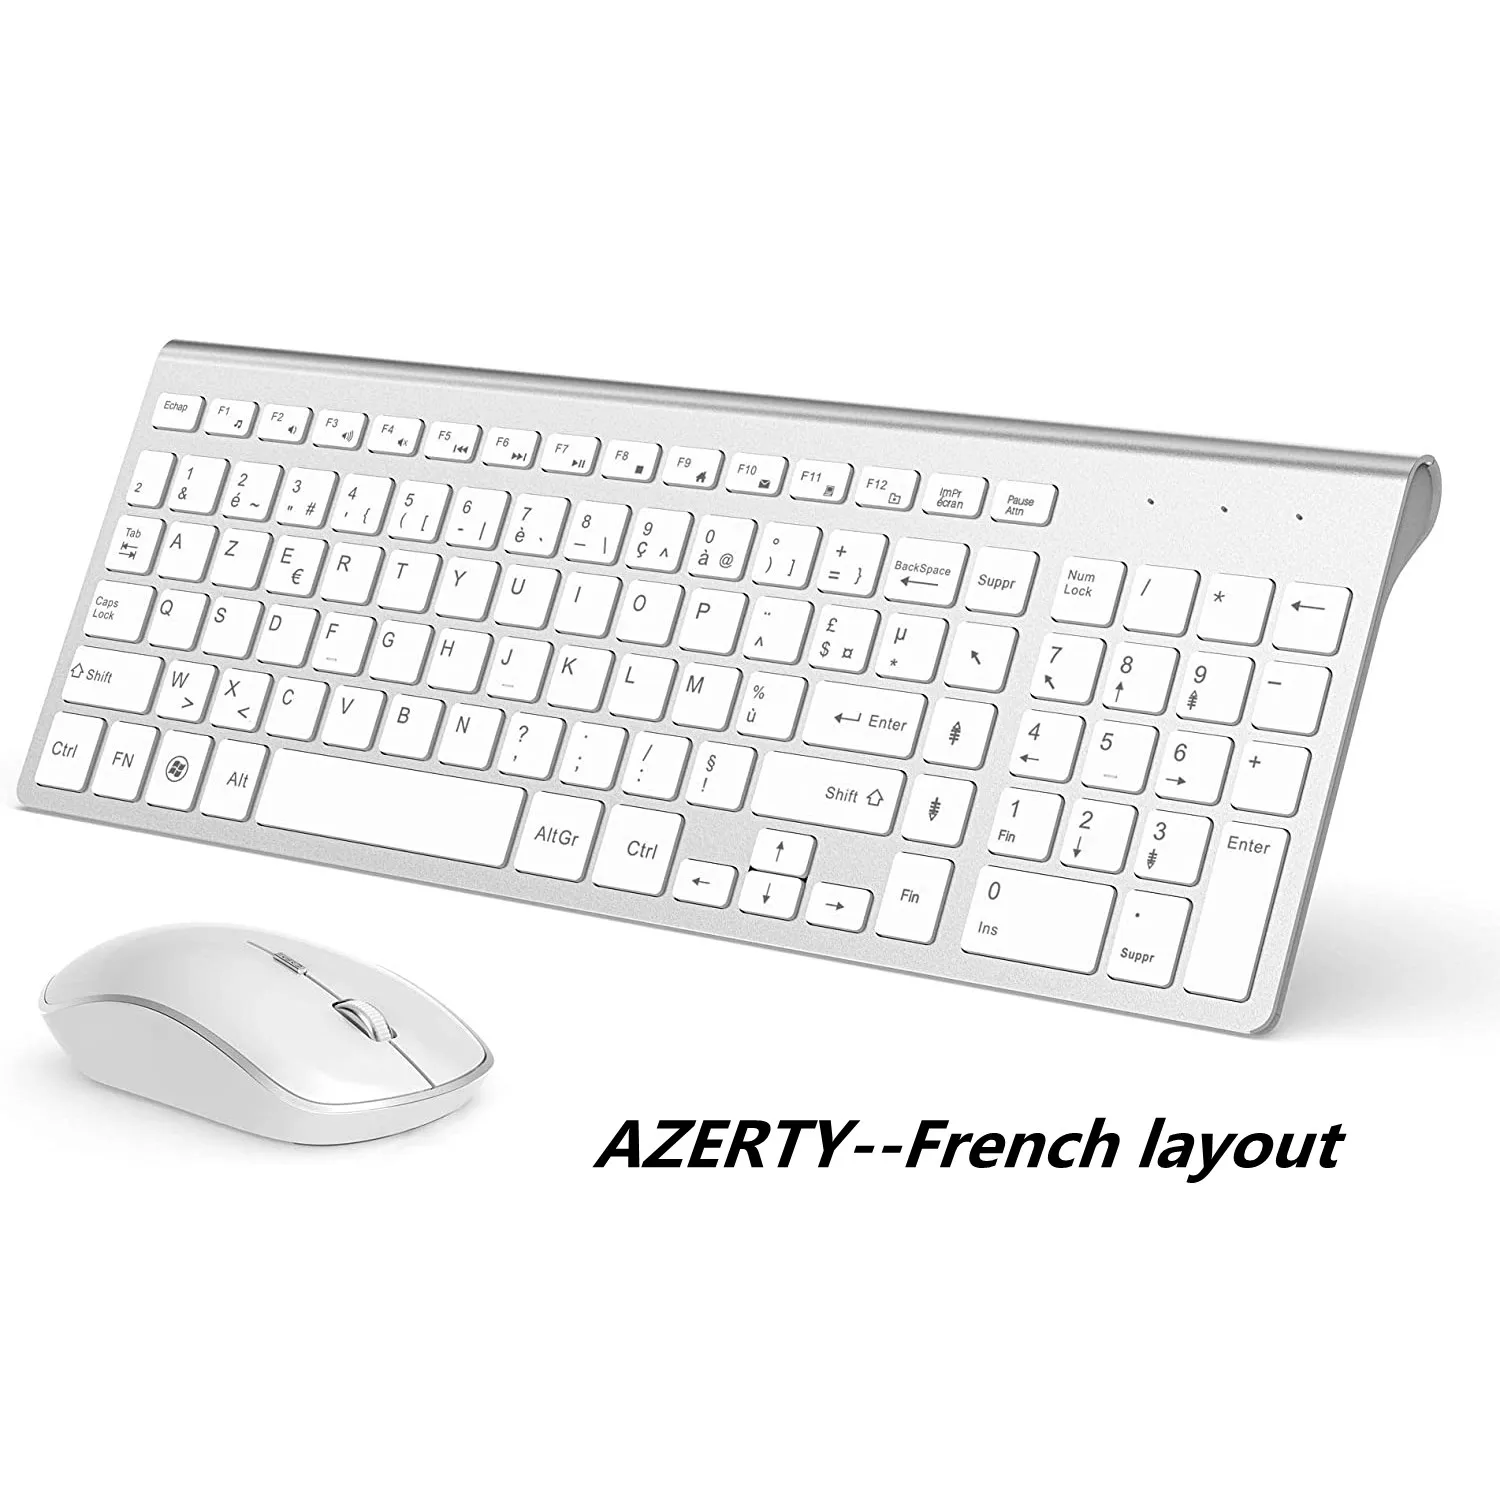 AZERTY Französisch 2,4G Wireless Tastatur Maus Ergonomische Kompatibel mit IMac Mac PC Laptop Tablet Computer Windows (Silber Weiß)